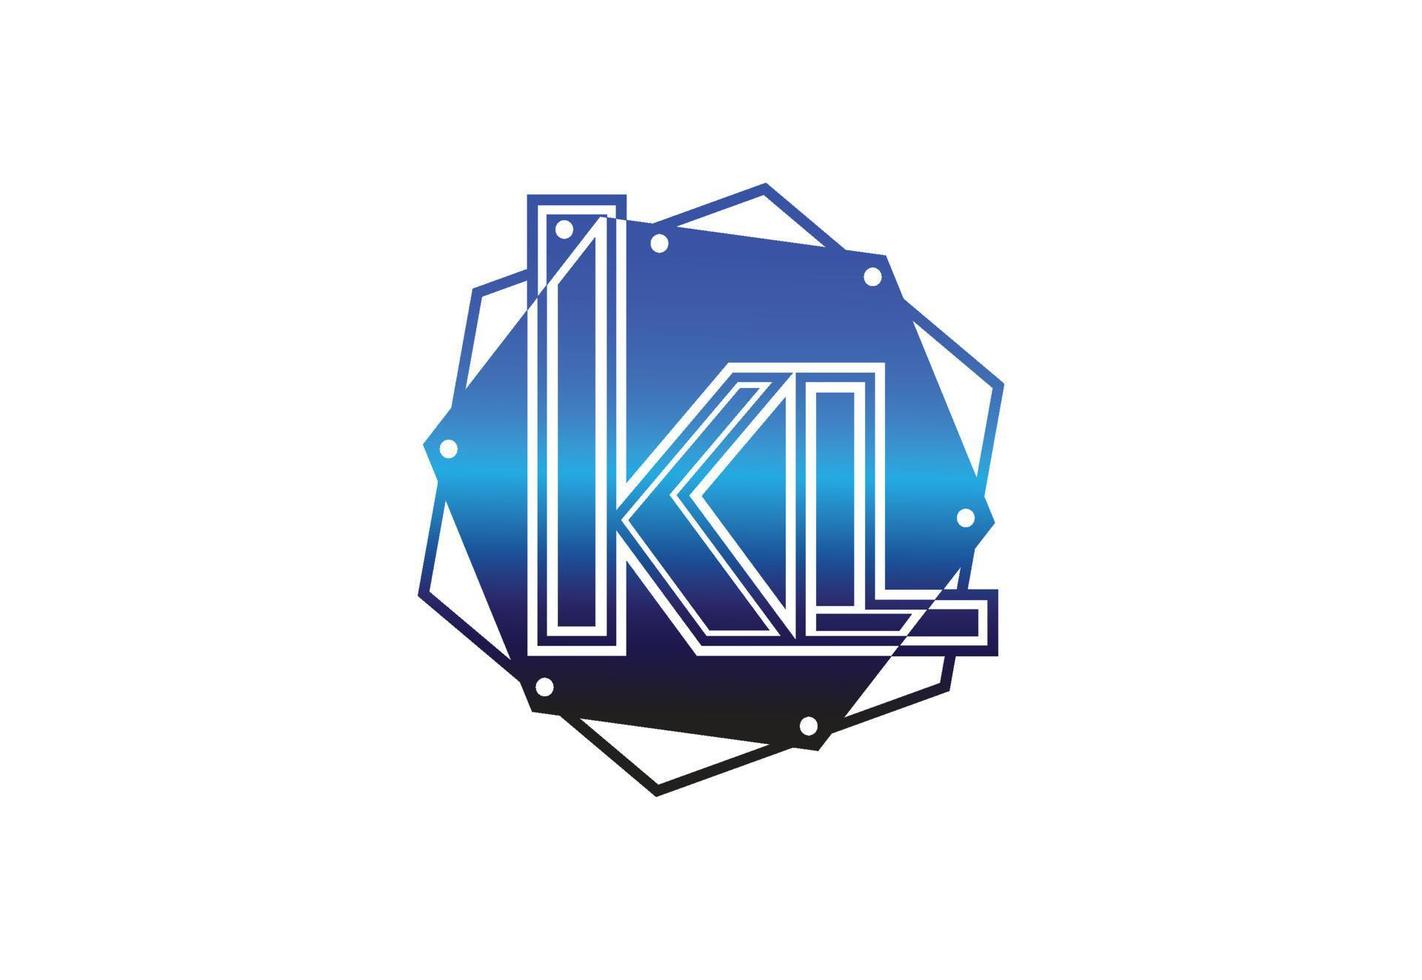 kl-Brief-Logo und Icon-Design-Vorlage vektor